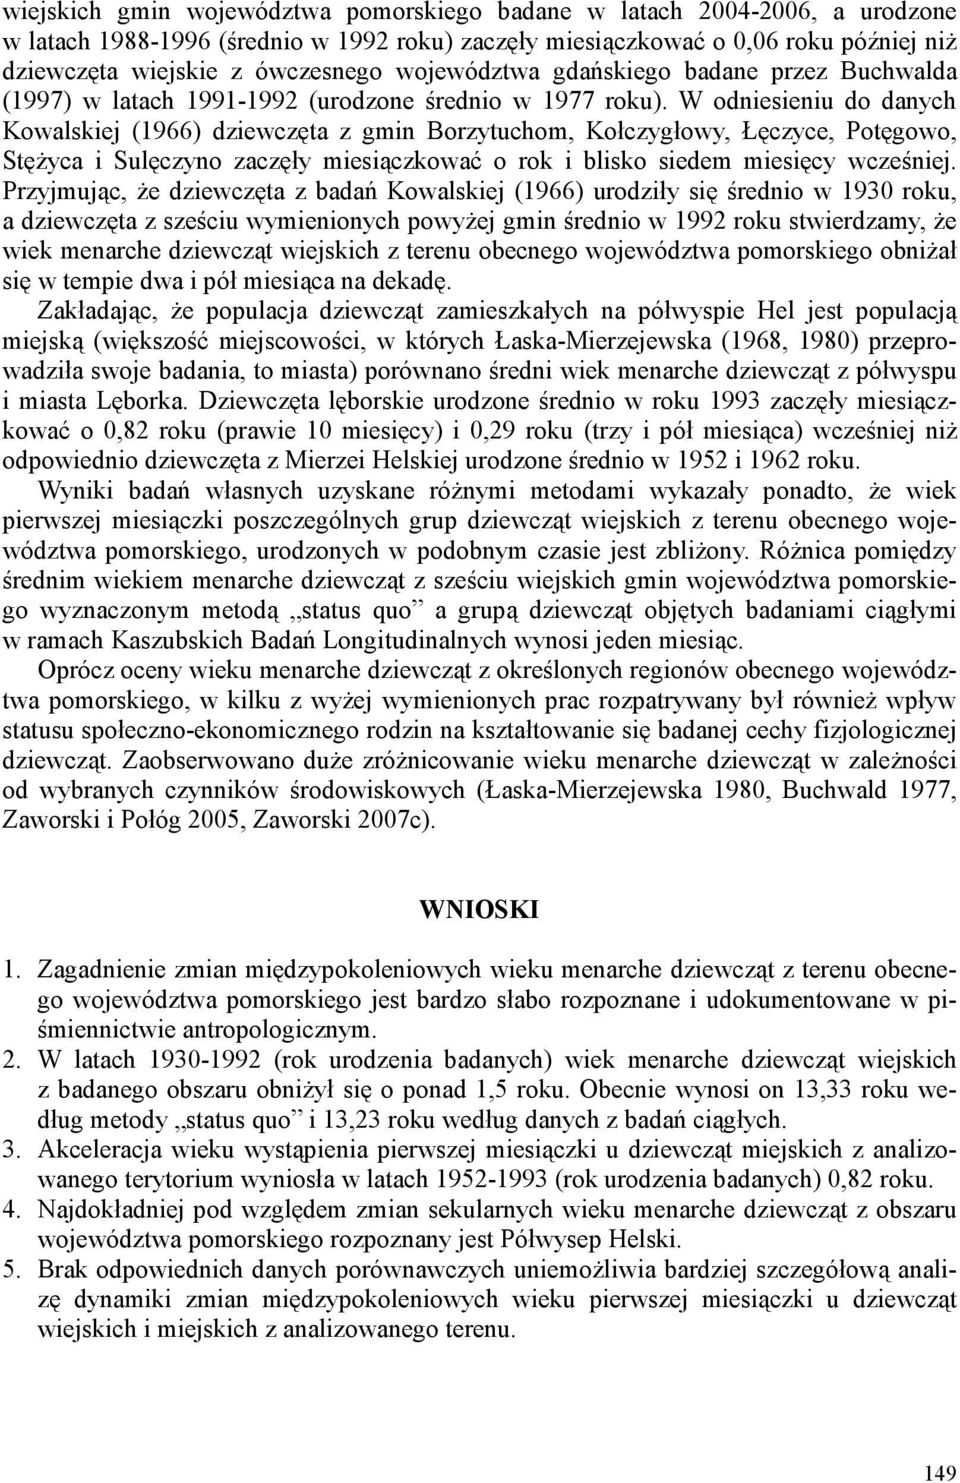 W odniesieniu do danych Kowalskiej (1966) dziewczęta z gmin Borzytuchom, Kołczygłowy, Łęczyce, Potęgowo, StęŜyca i Sulęczyno zaczęły miesiączkować o rok i blisko siedem miesięcy wcześniej.